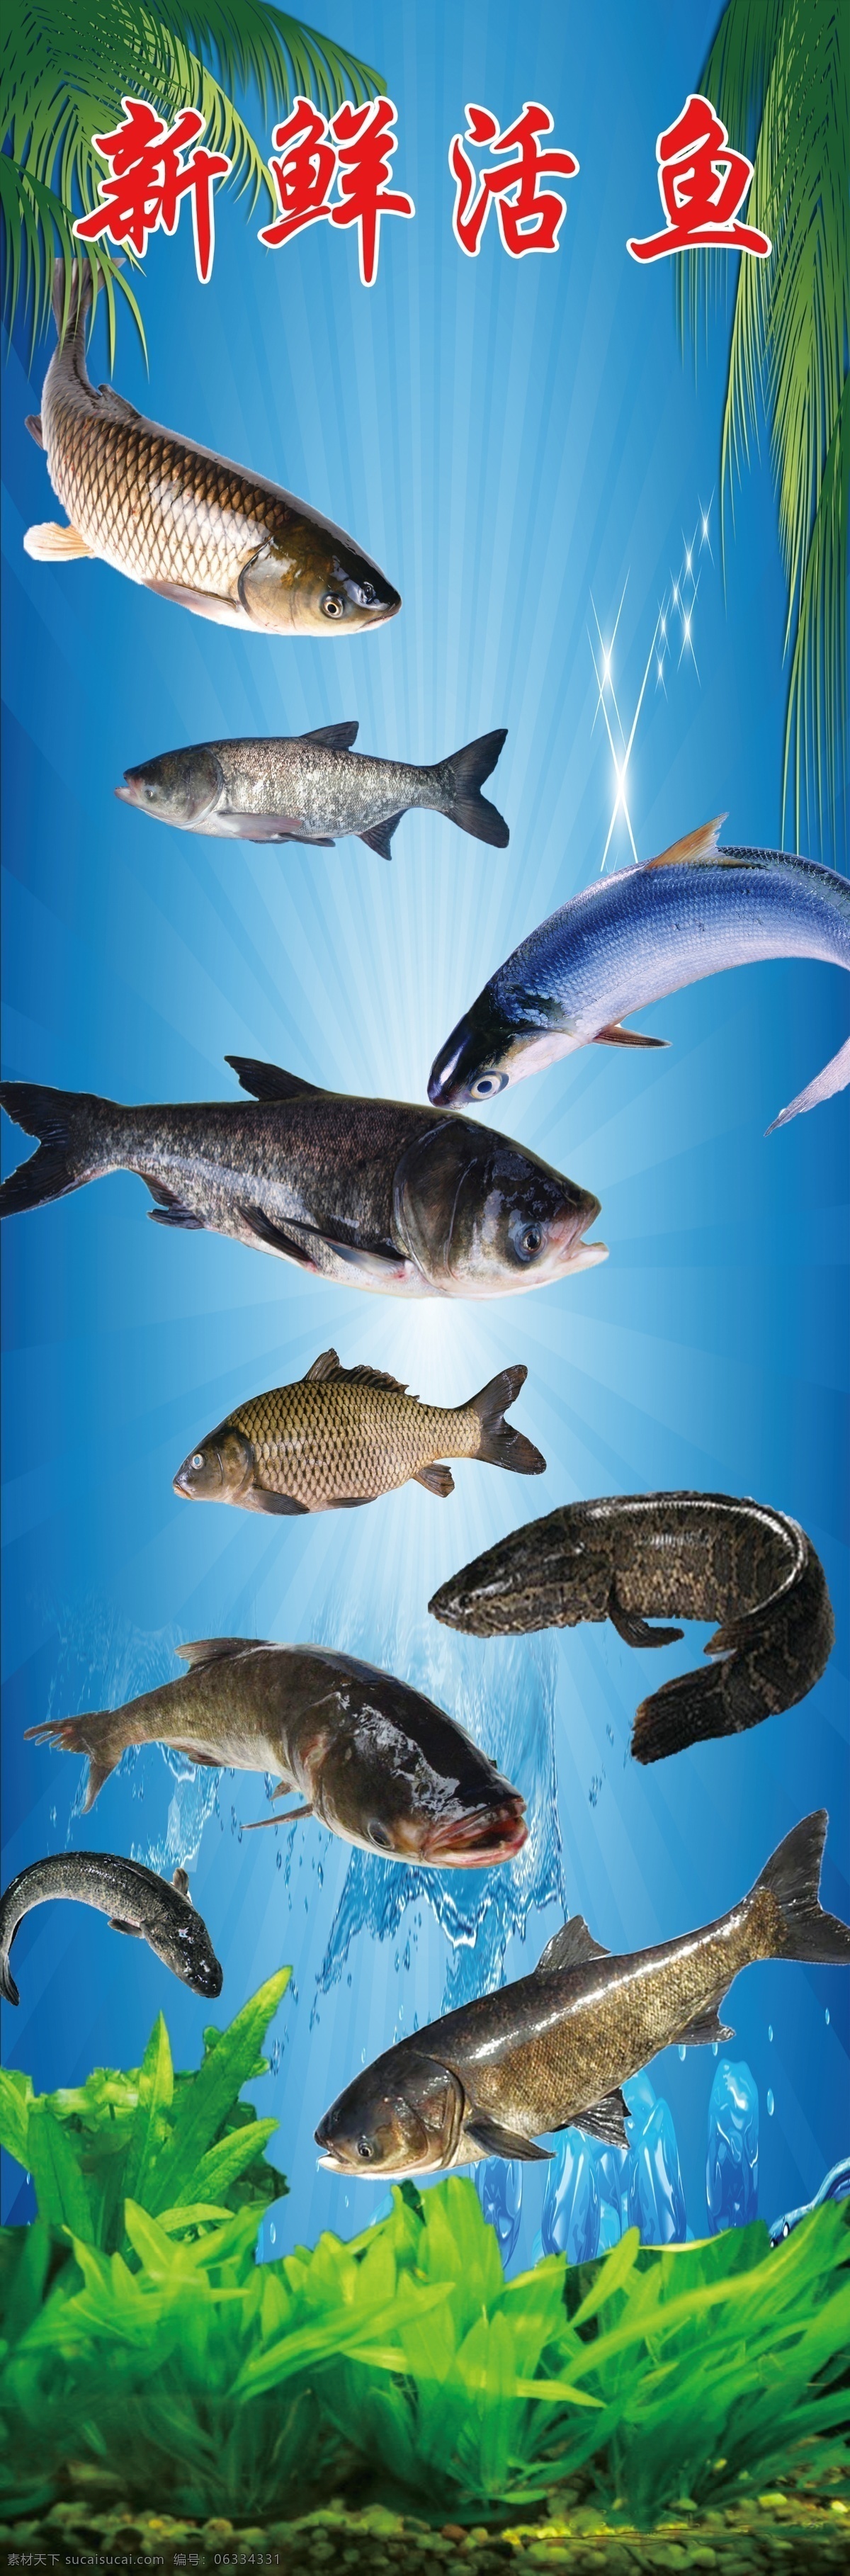 新鲜活鱼广告 新鲜活鱼 鱼类 水里 水草 草鱼 鲢鱼 室内广告设计